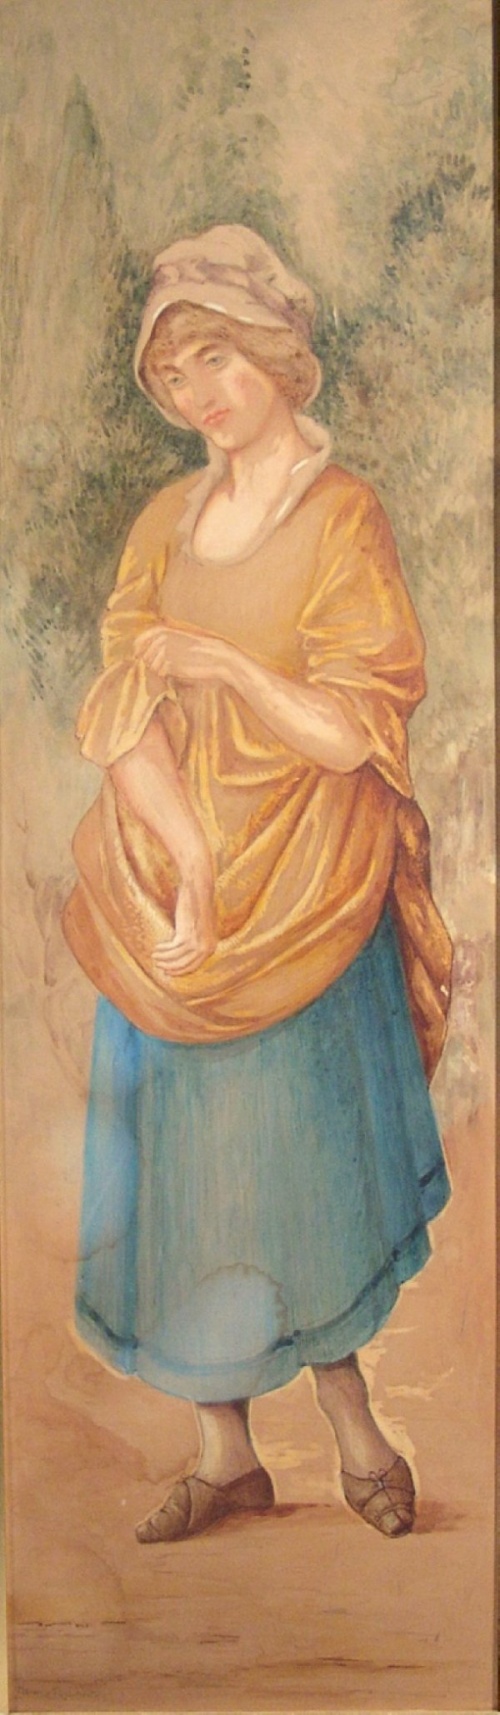 Английский живописец Henry Ryland( 1856-1924) (92 работ)